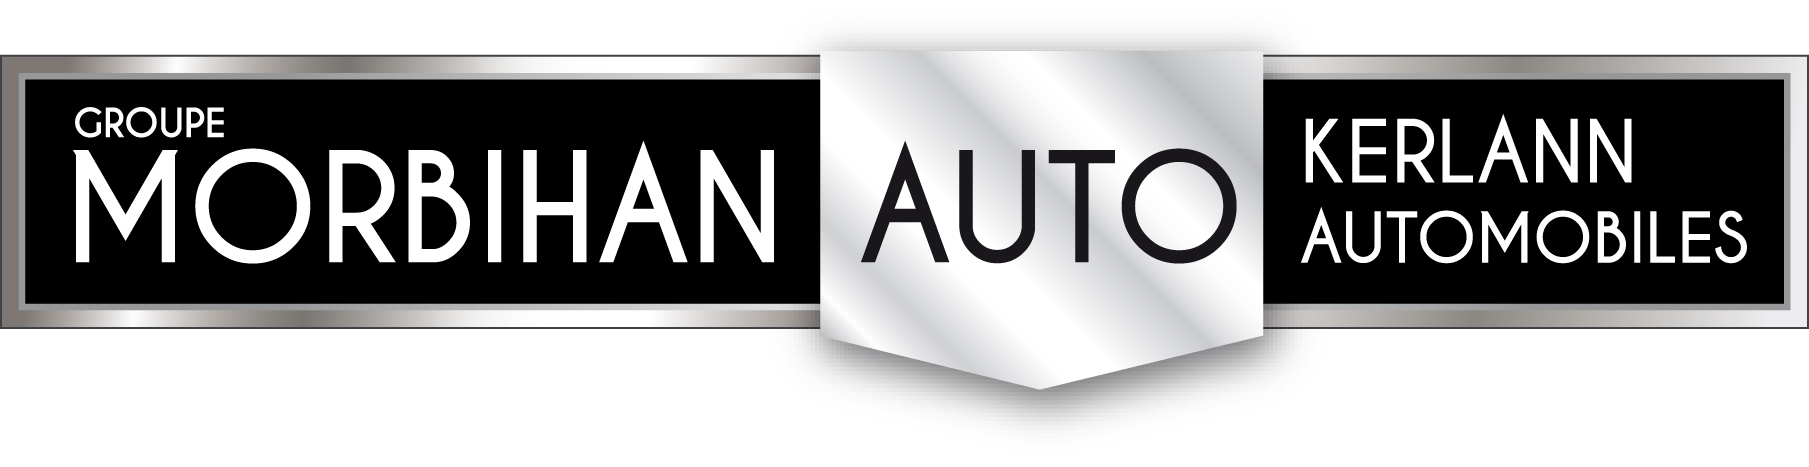 Logo MORBIHAN AUTO - KERLANN AUTOMOBILES